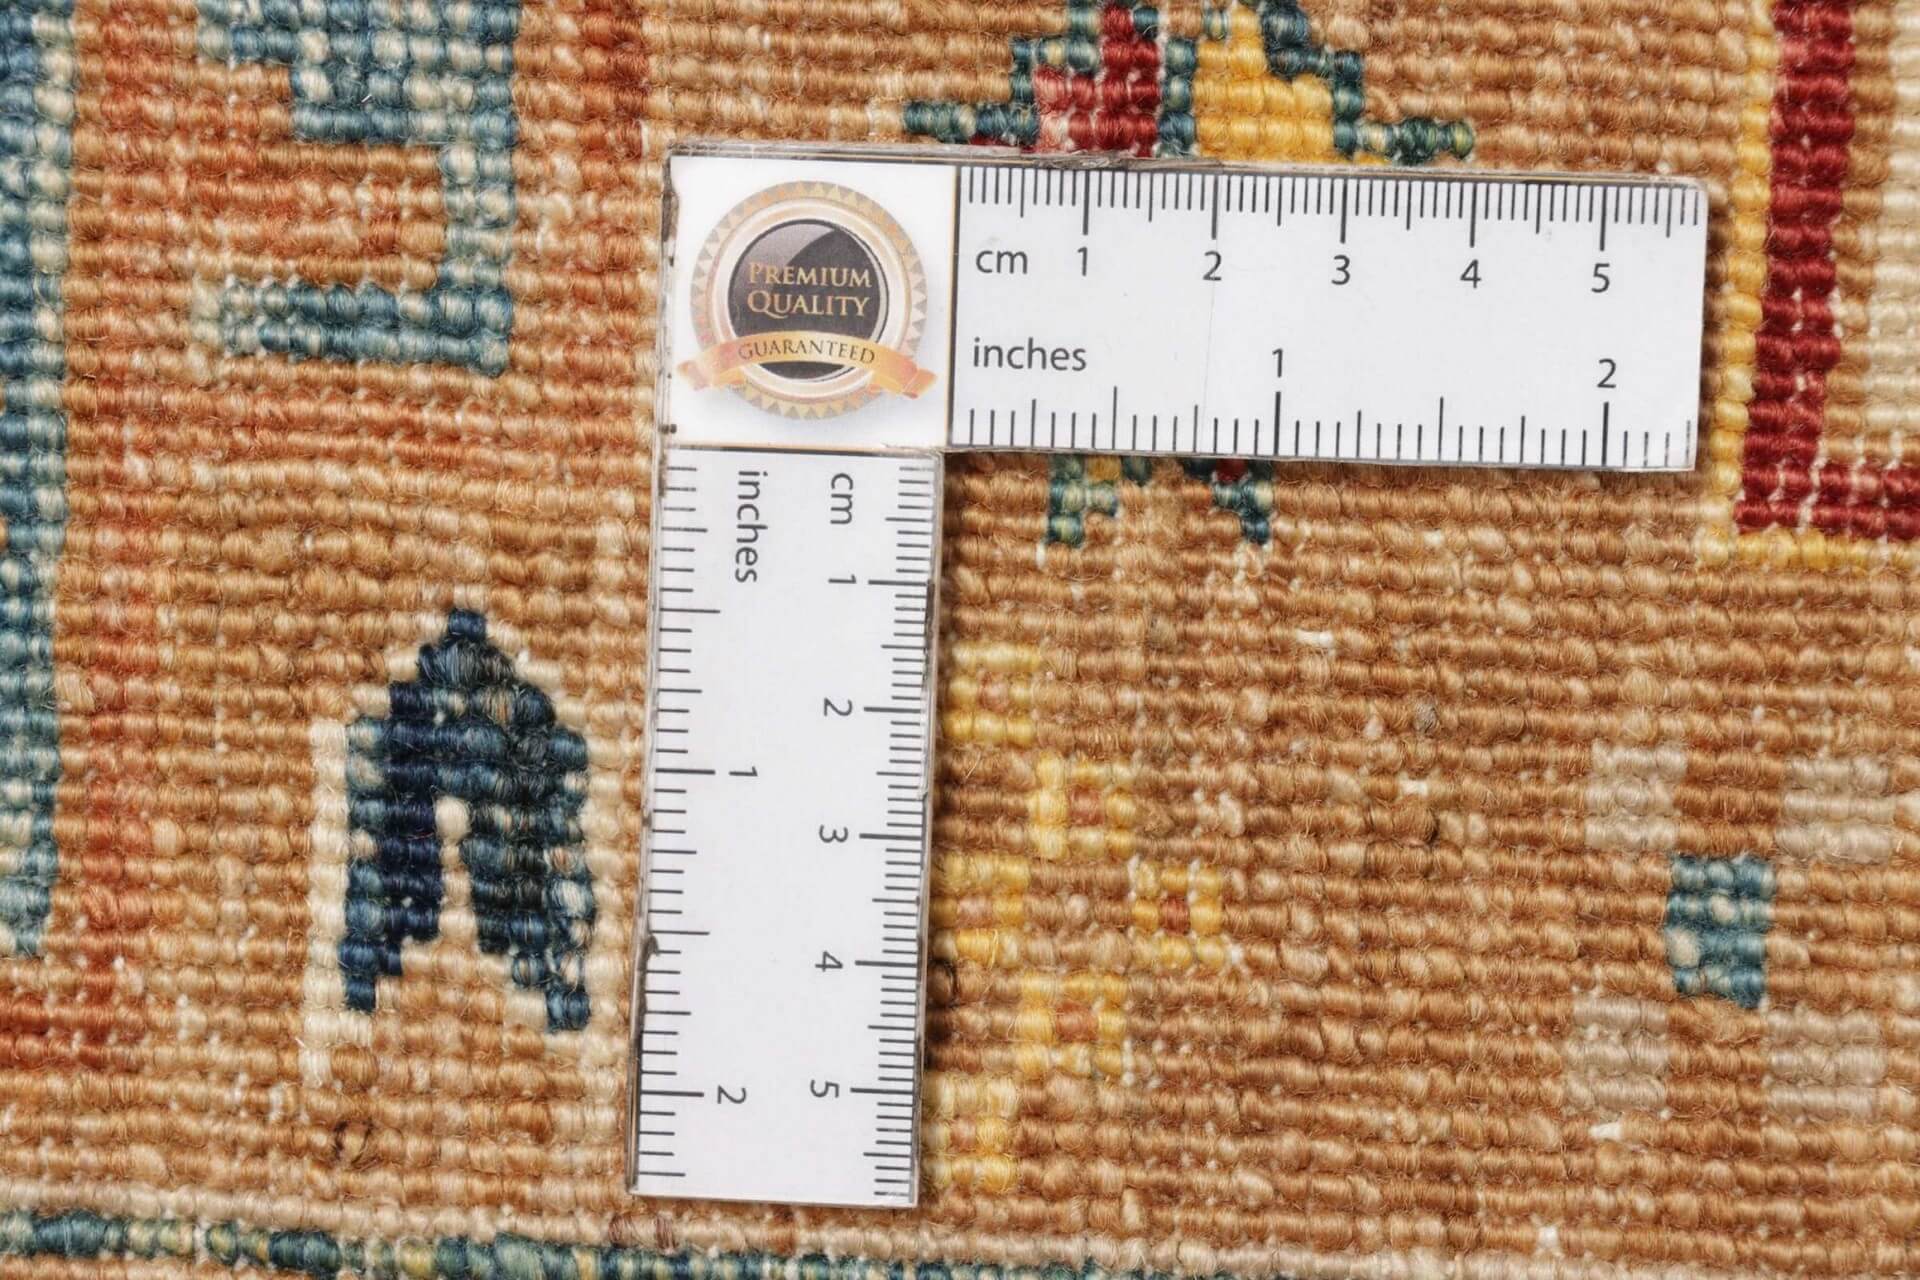  Afghanteppich Triabl Beige, reine Schurwolle, handgeknüpft, 169 x 238 cm, Ansicht Rückseite